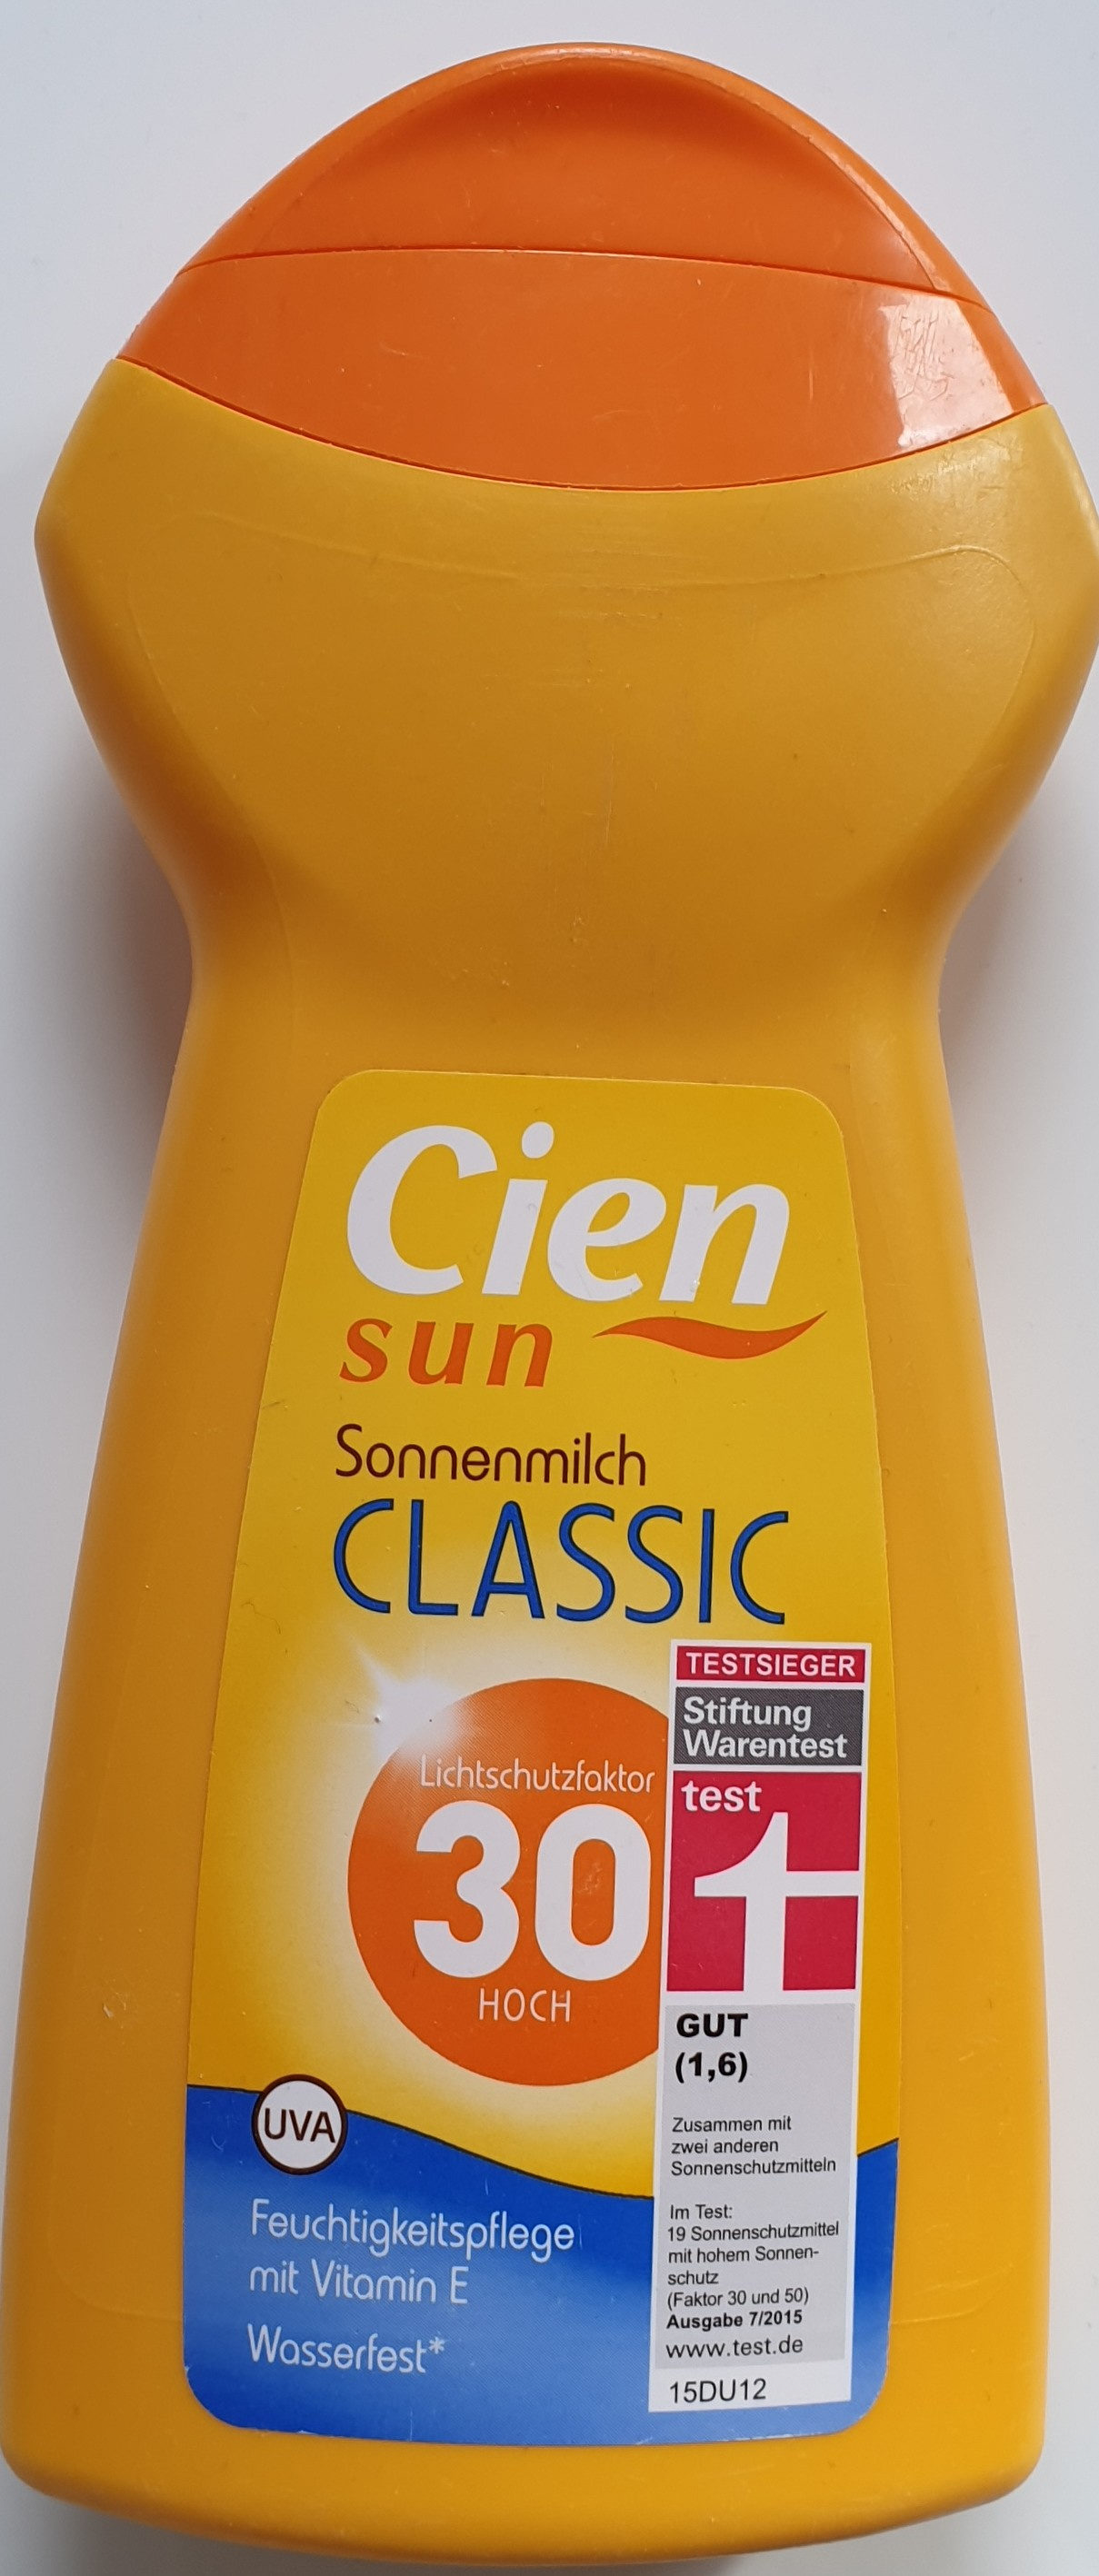 Sonnenmilch classic LSF 30 - Produit - de